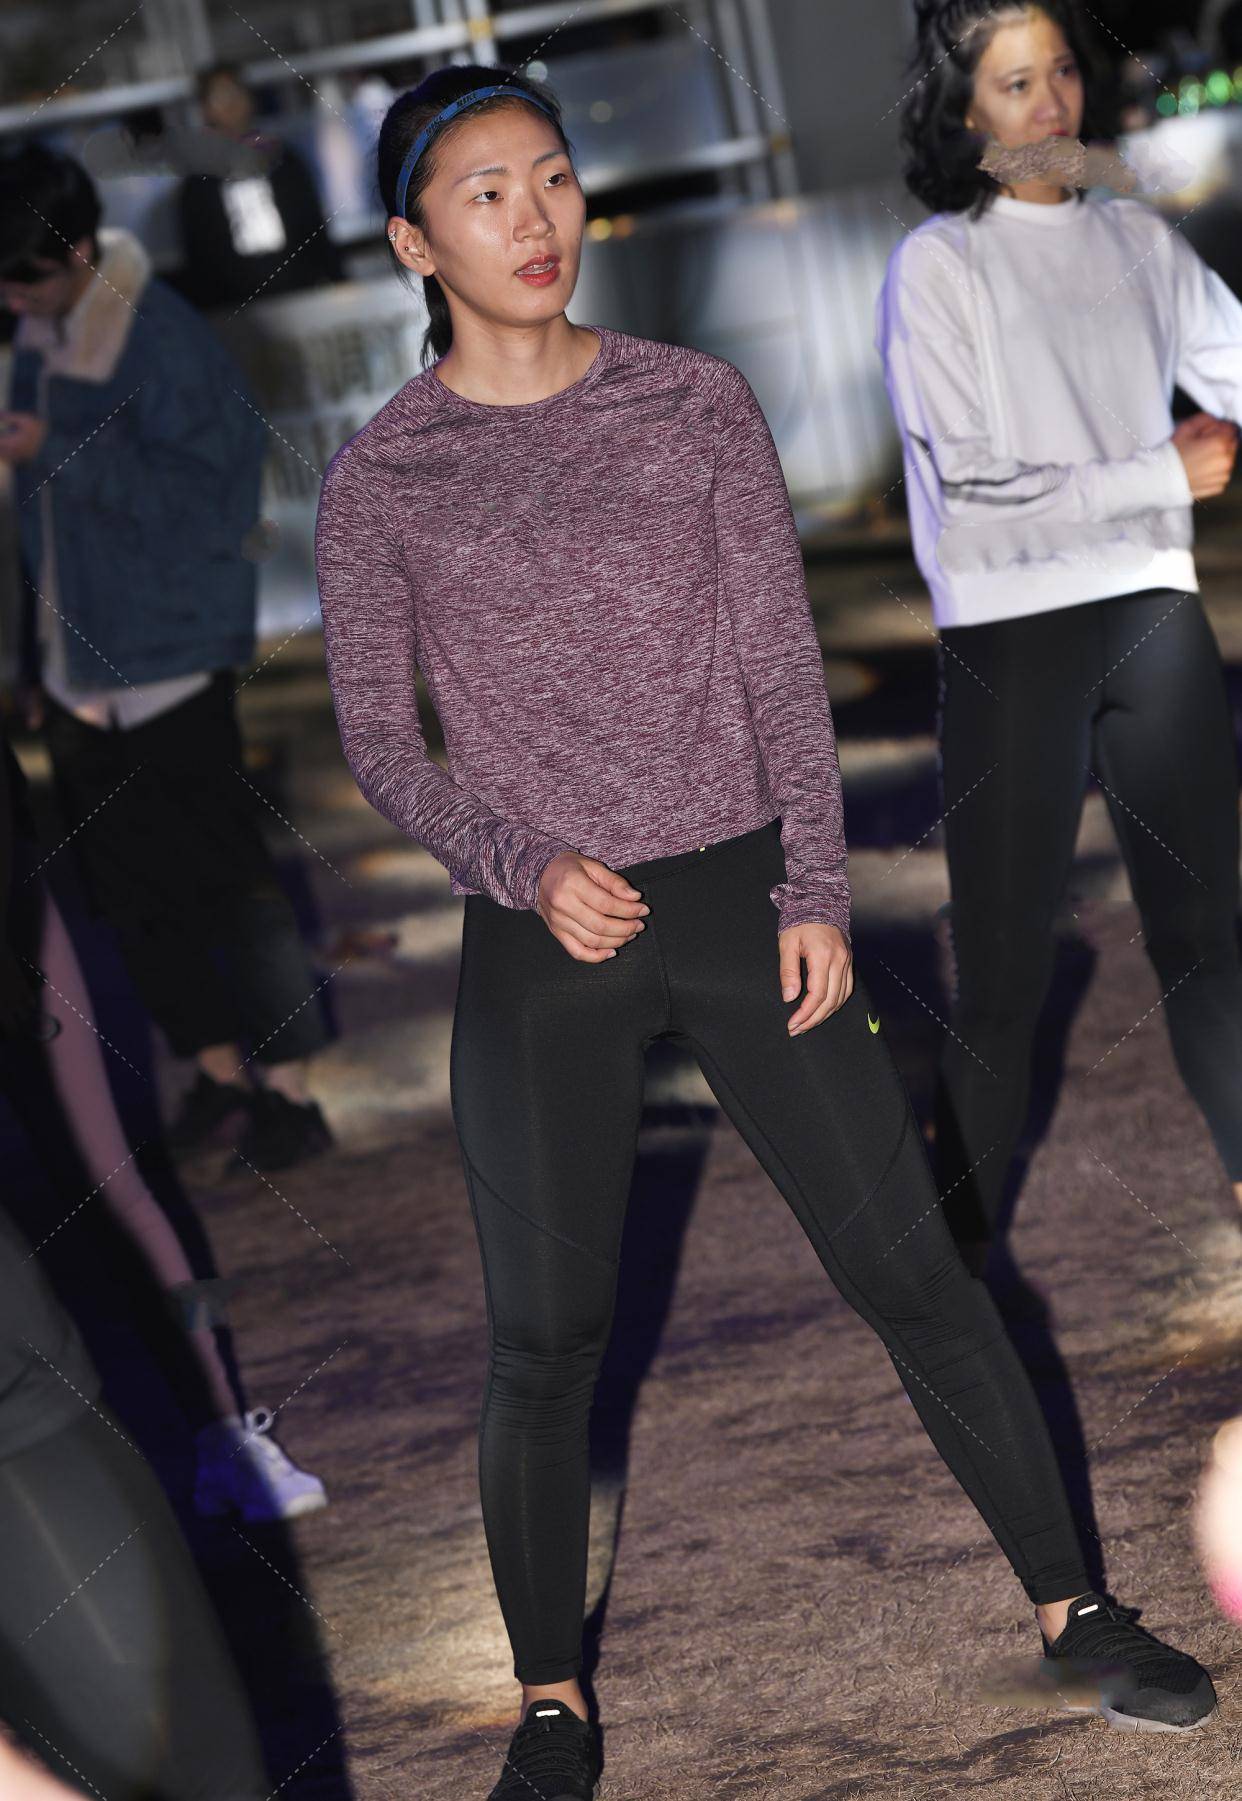 黑色紧身瑜伽裤搭配灰紫色上衣,低调性感,休闲舒适的运动装